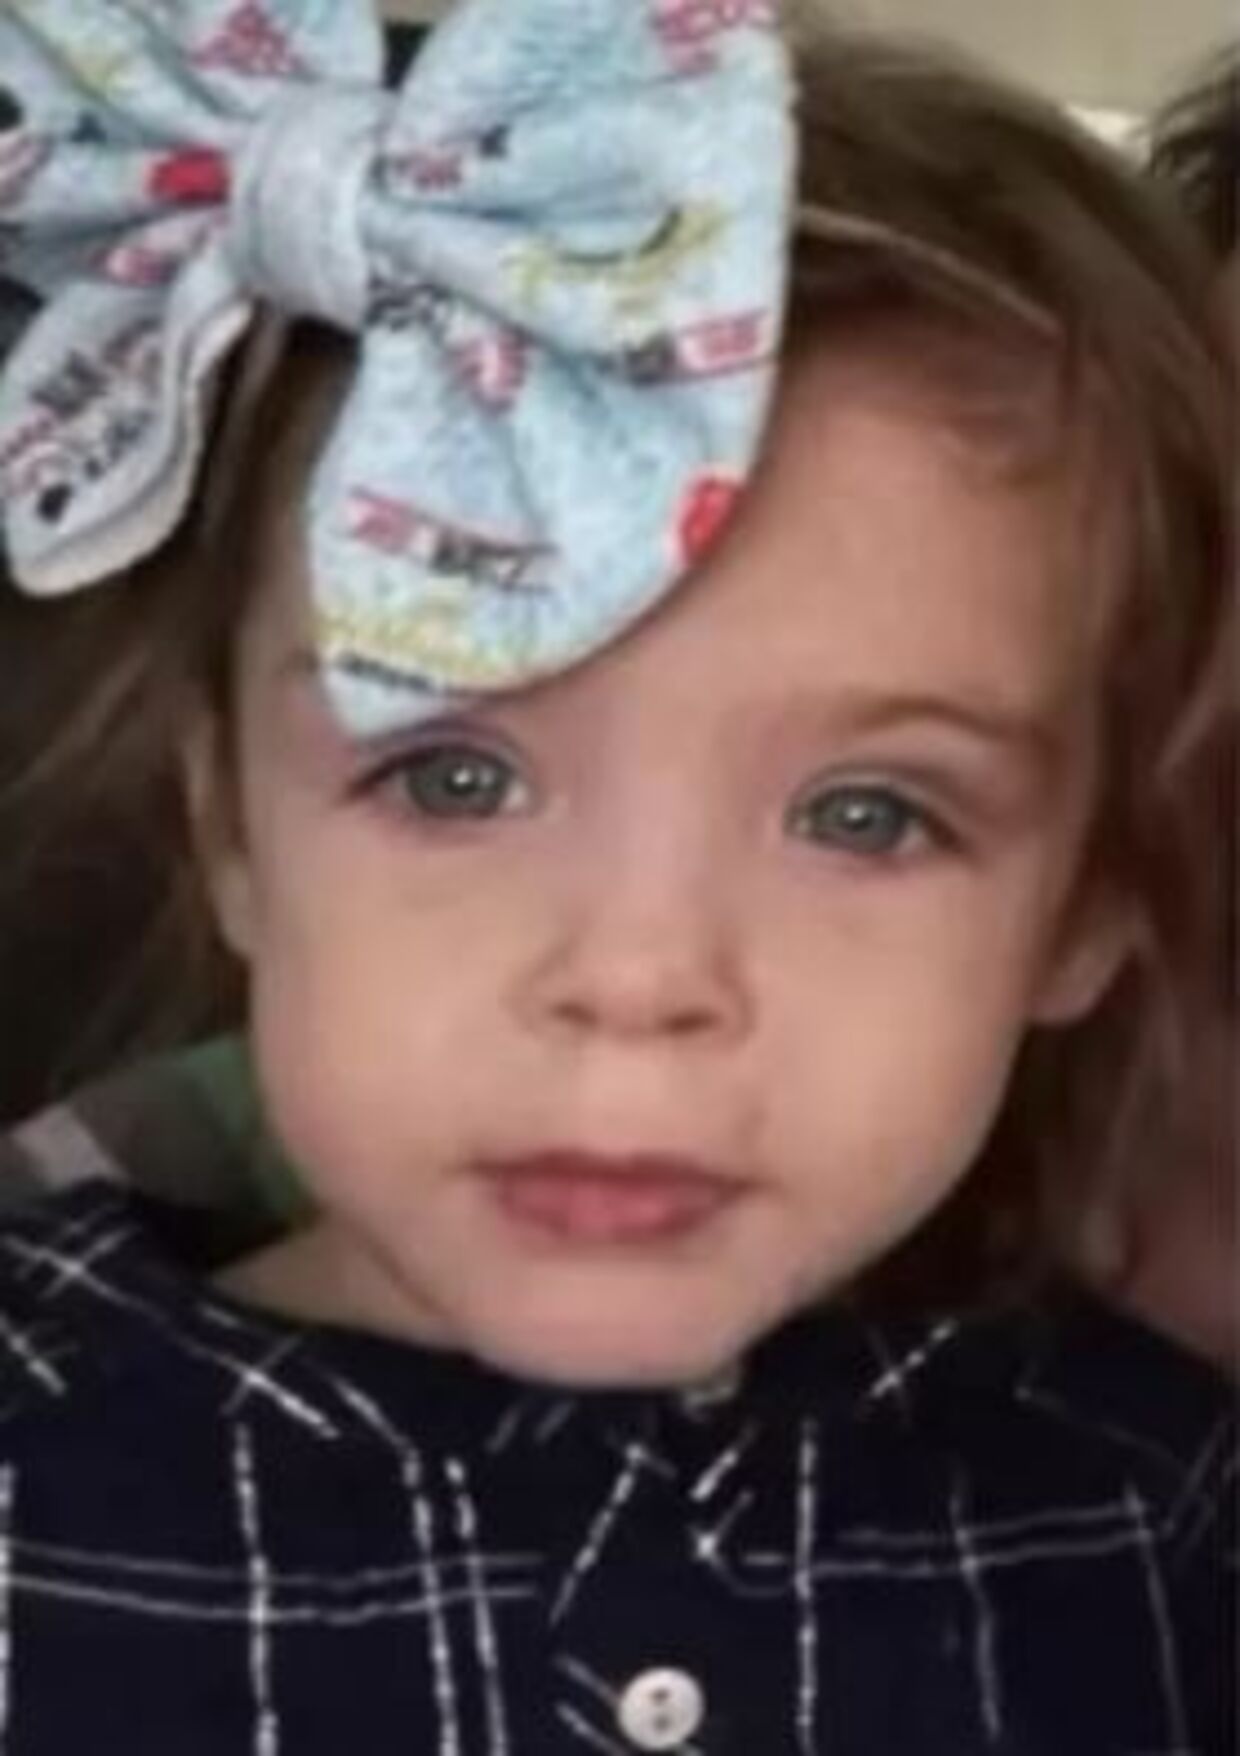 Fire-årige Athena Brownfield har været forsvundet siden tirsdag.